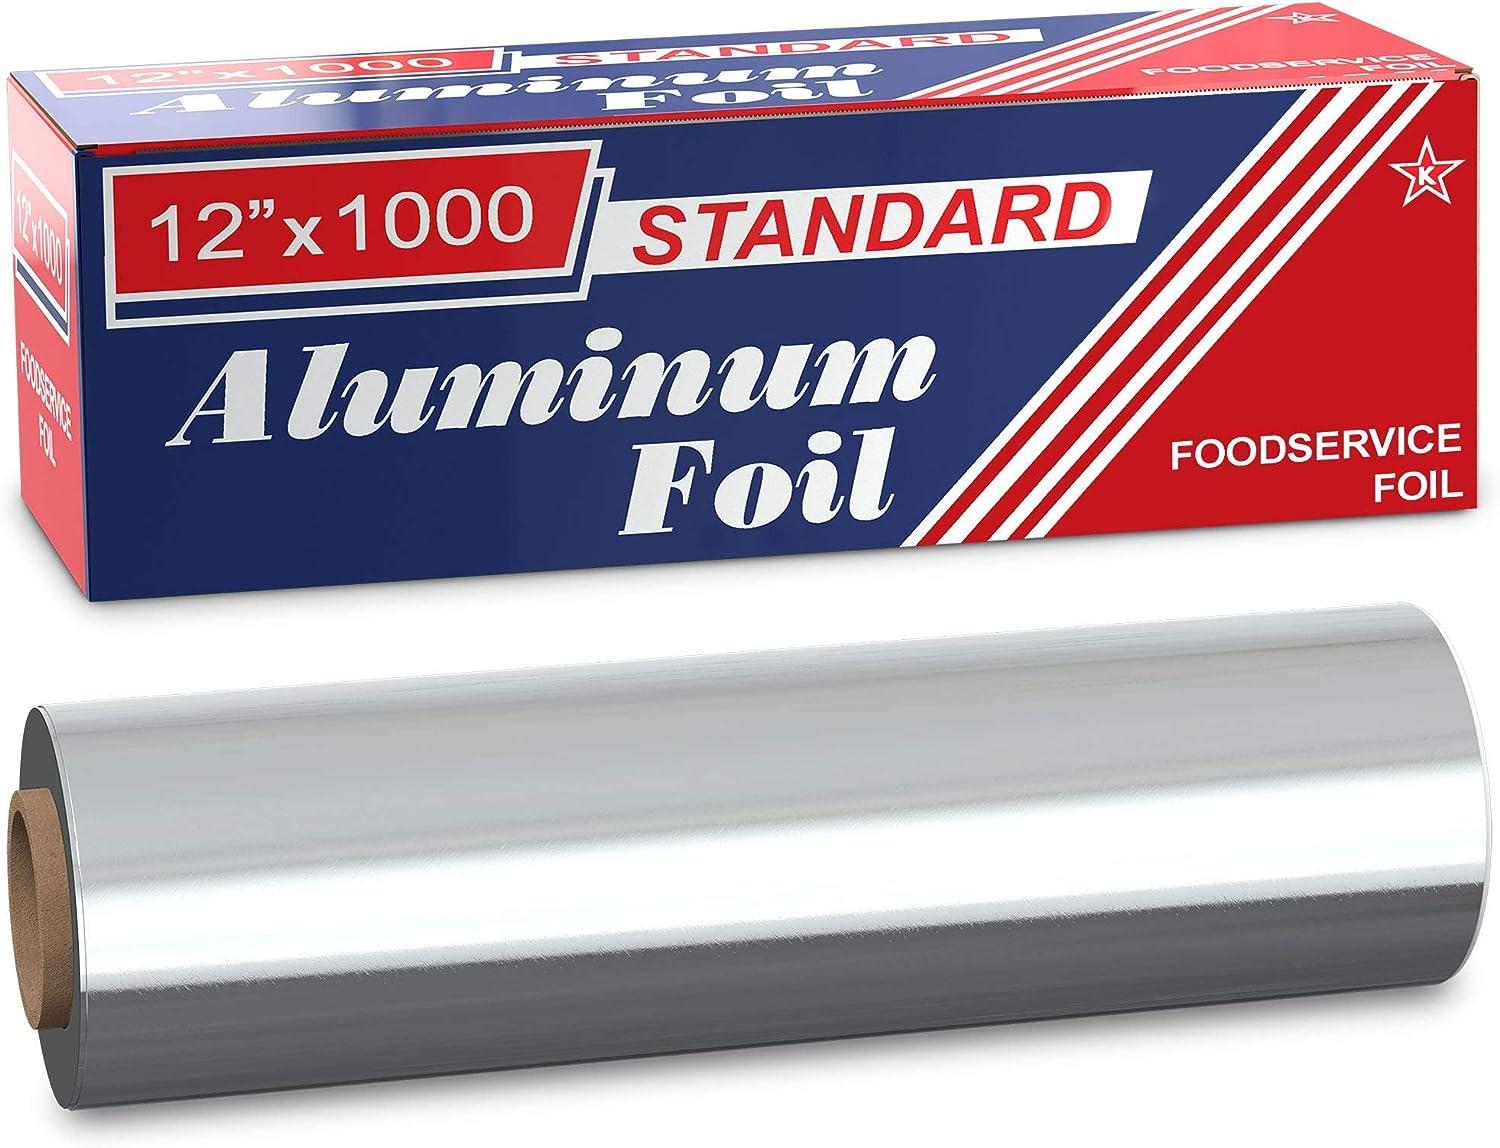 12 x 1000' Food Service Standard Aluminum Foil Roll